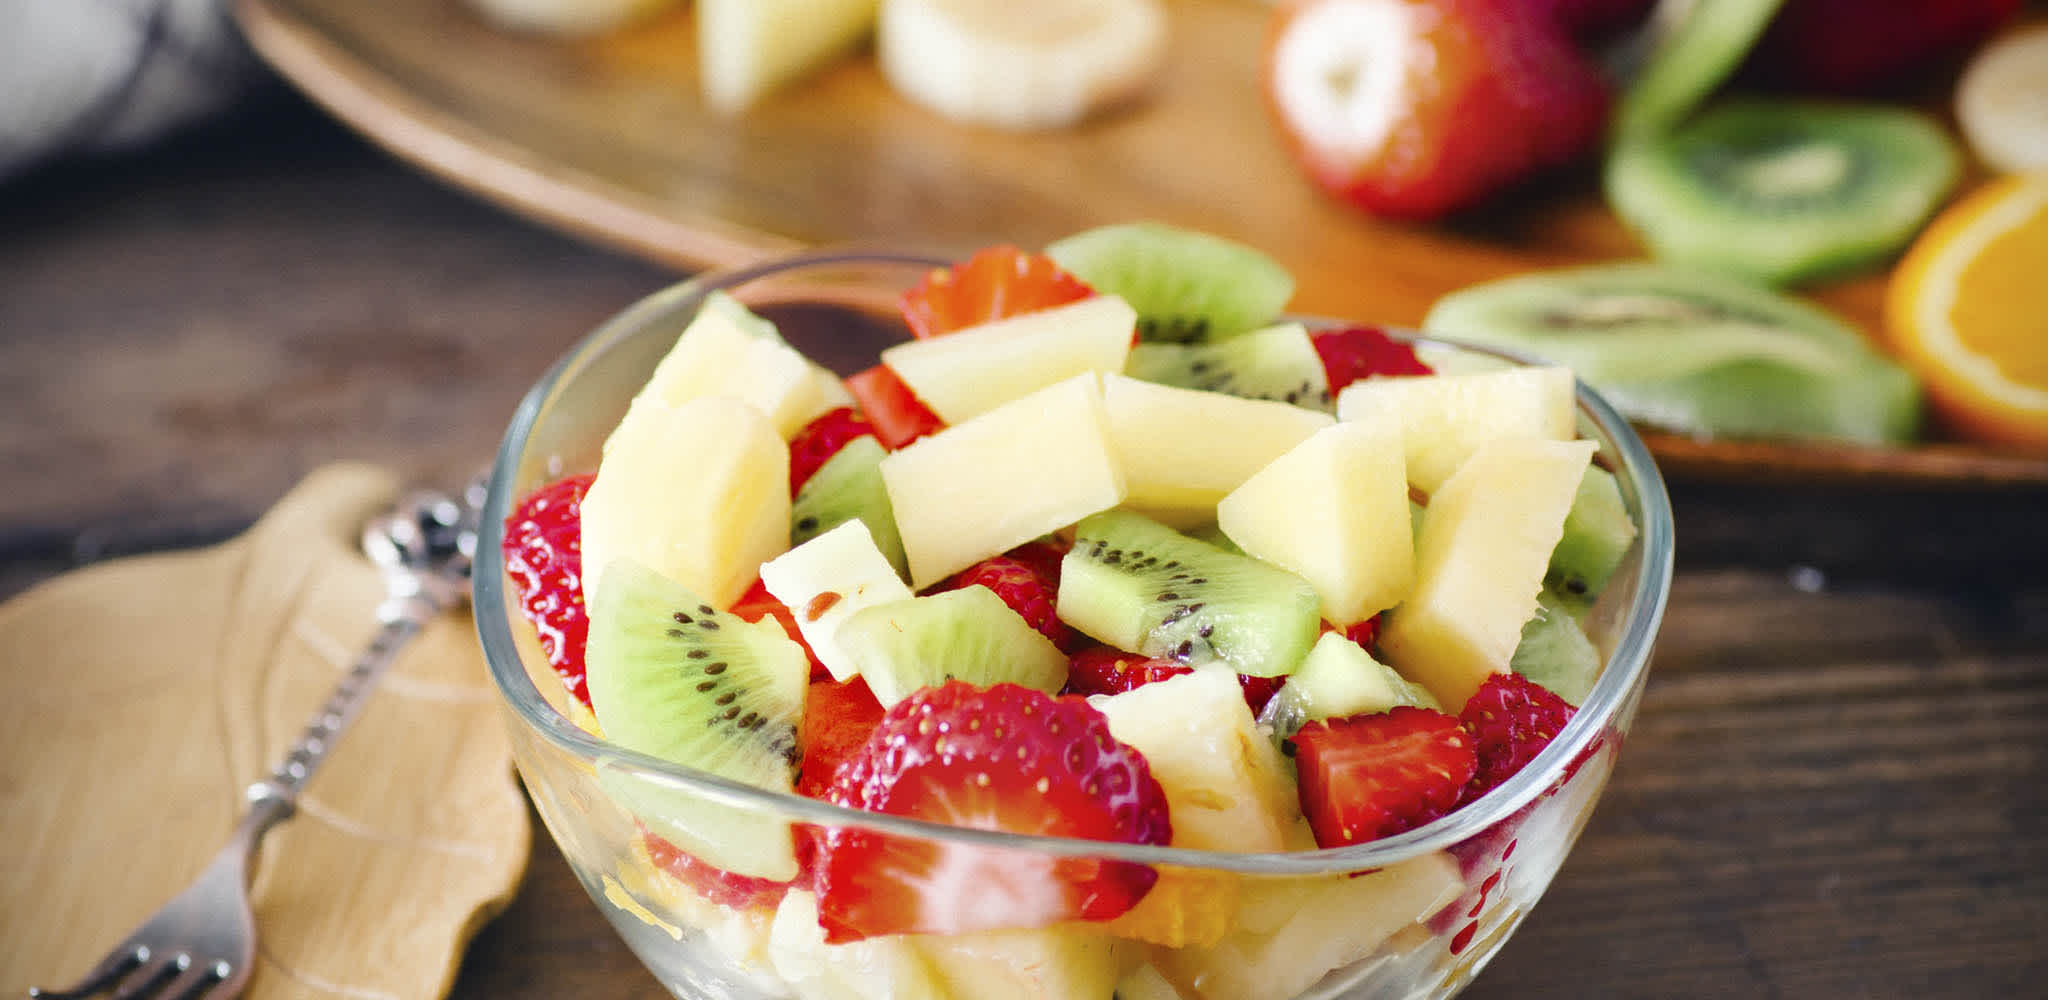 Salada de frutas com maça, morango e kiwi